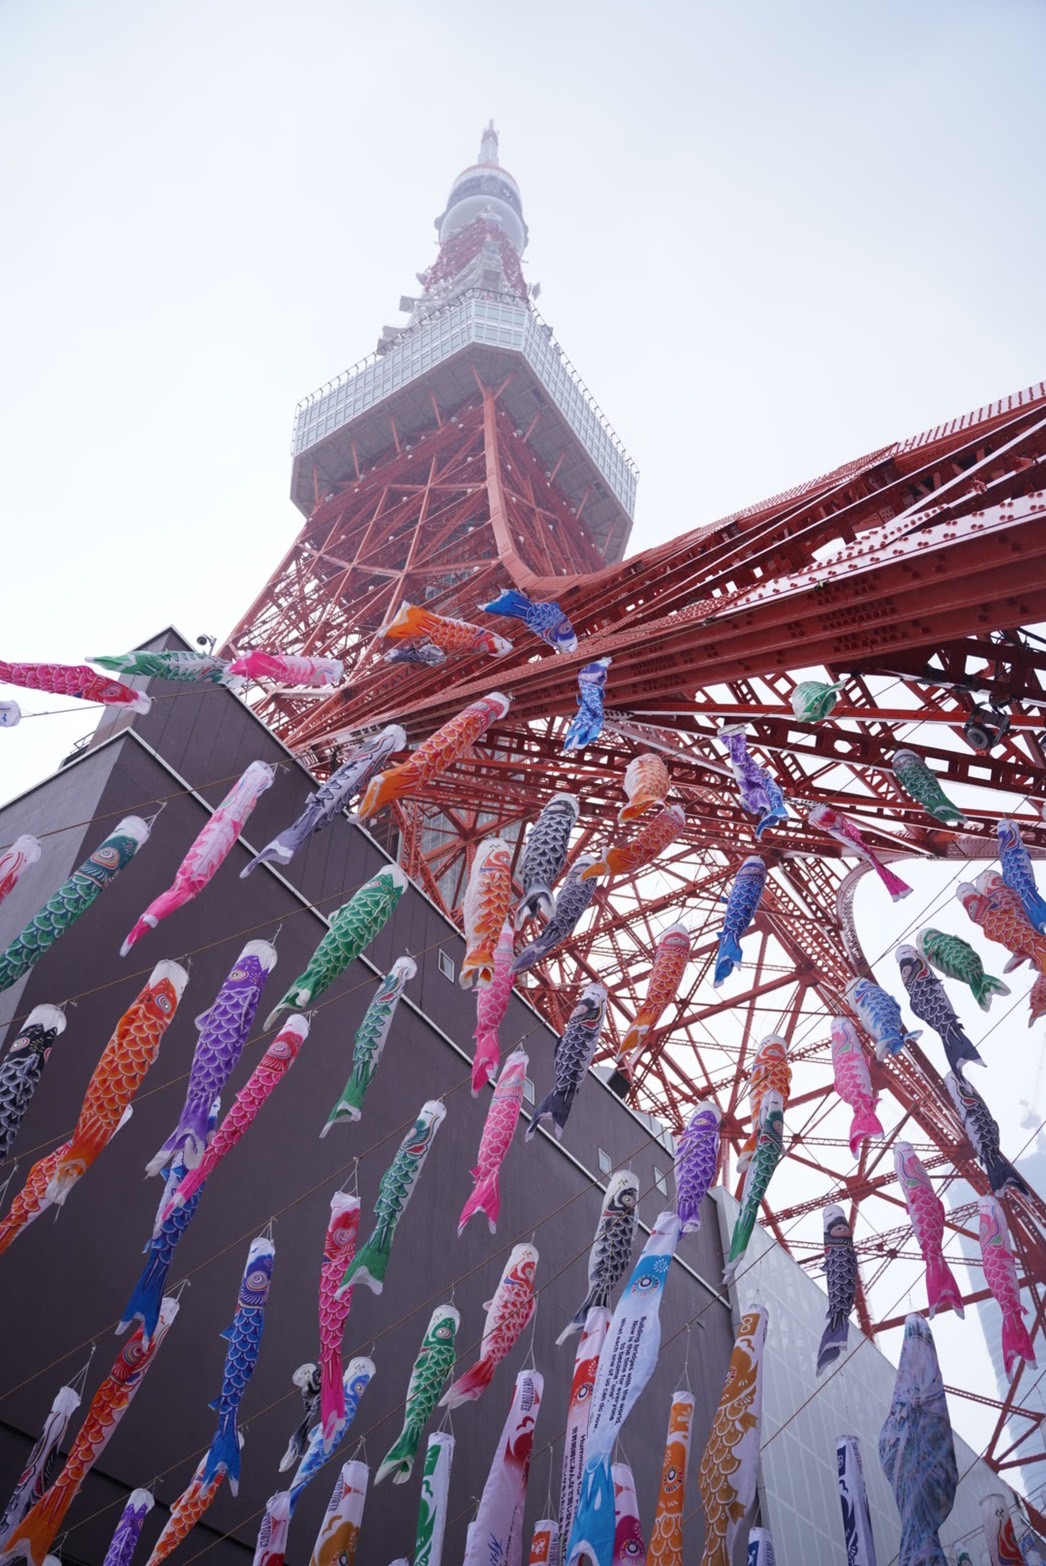 株式会社TOKYO TOWER主催『333匹の鯉のぼり』